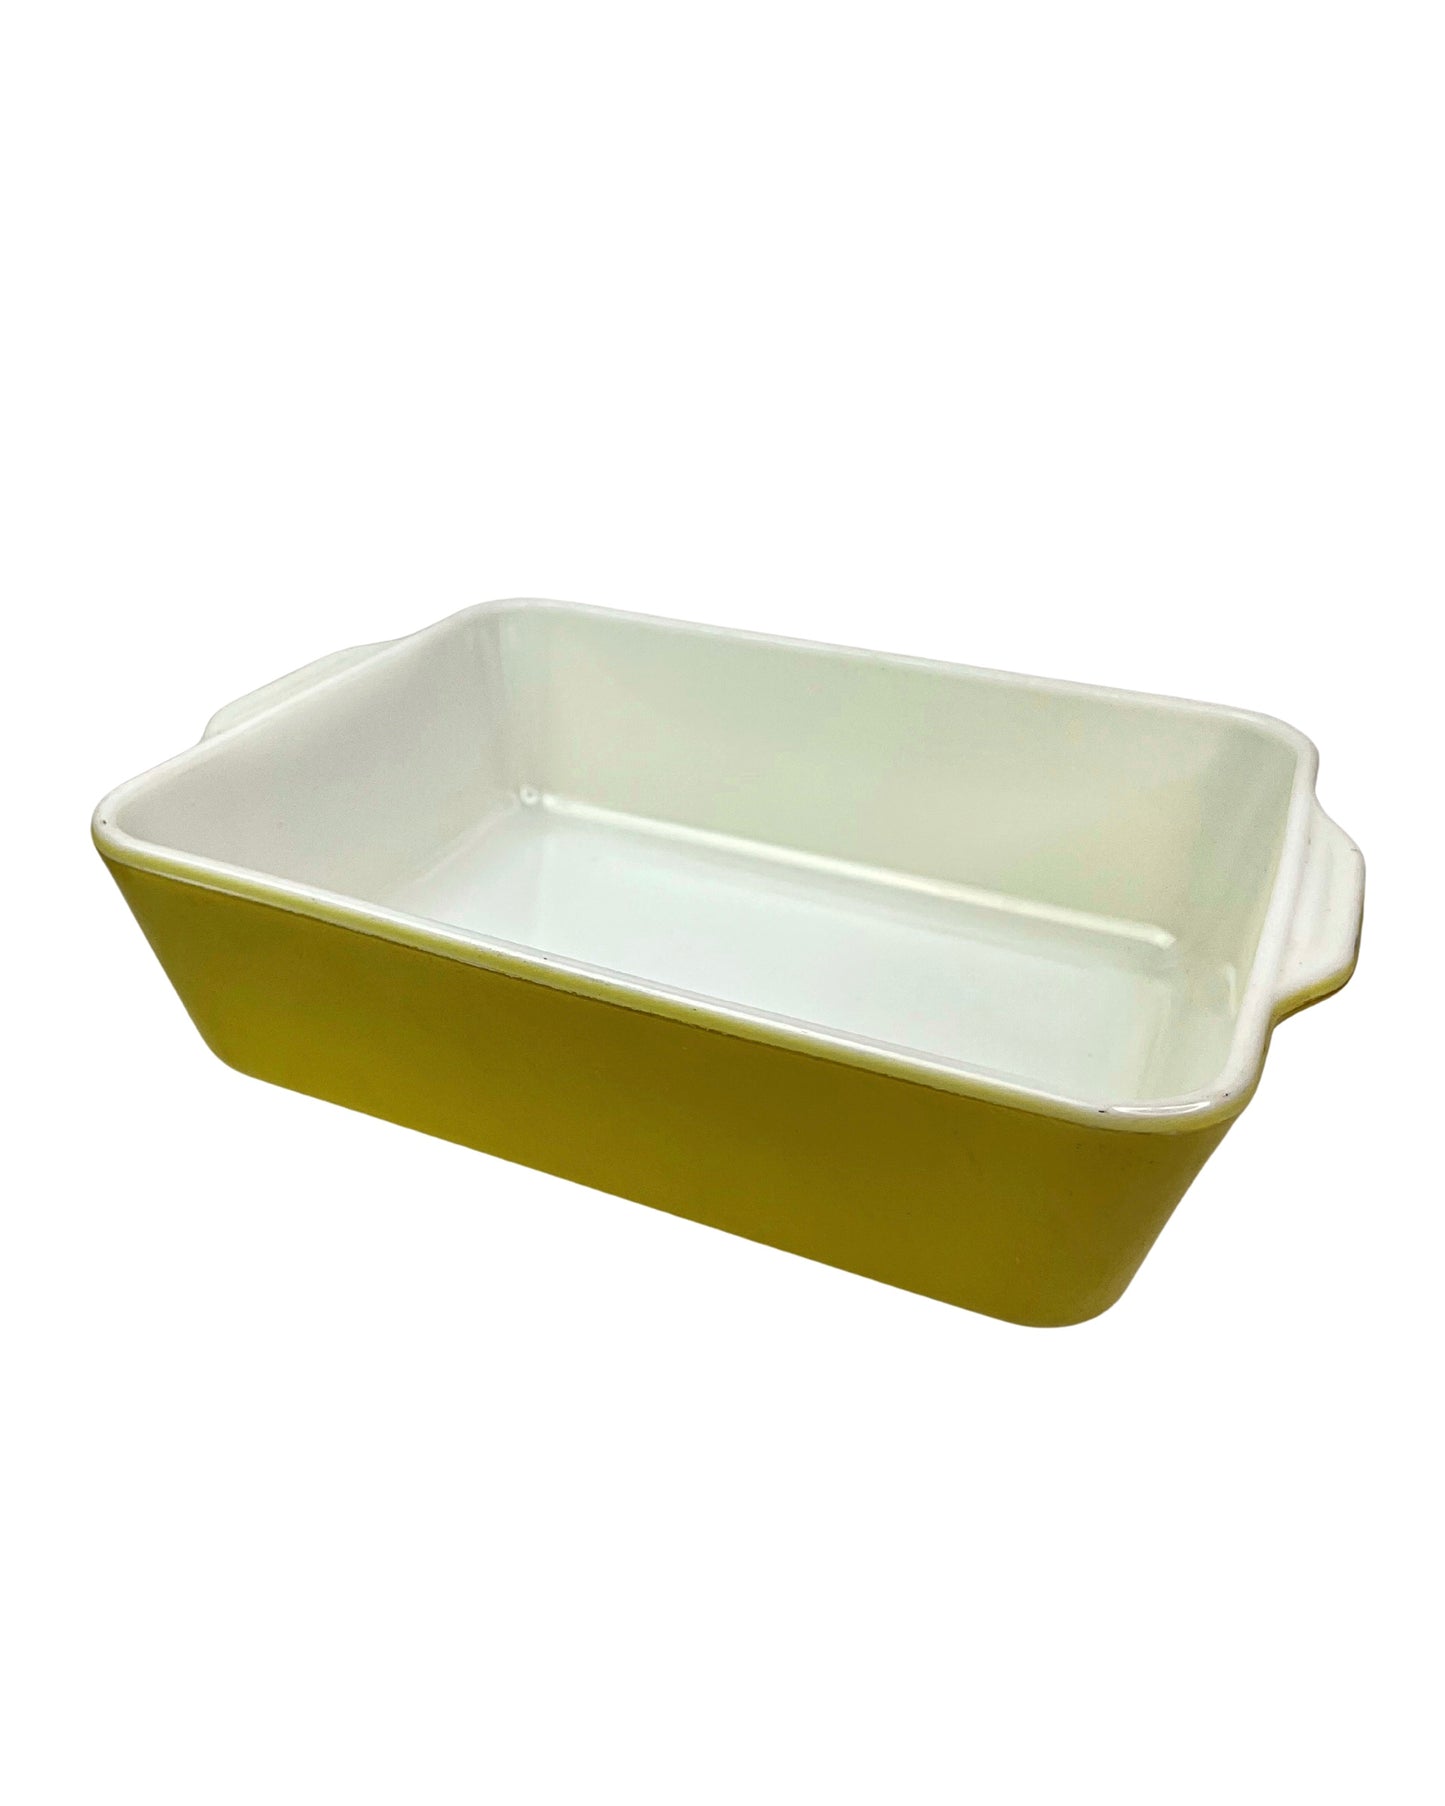 Vintage 50’s Pyrex Primary Yellow Refrigerator Dish #503 Rectangular Baking Dish 1.5 Quart